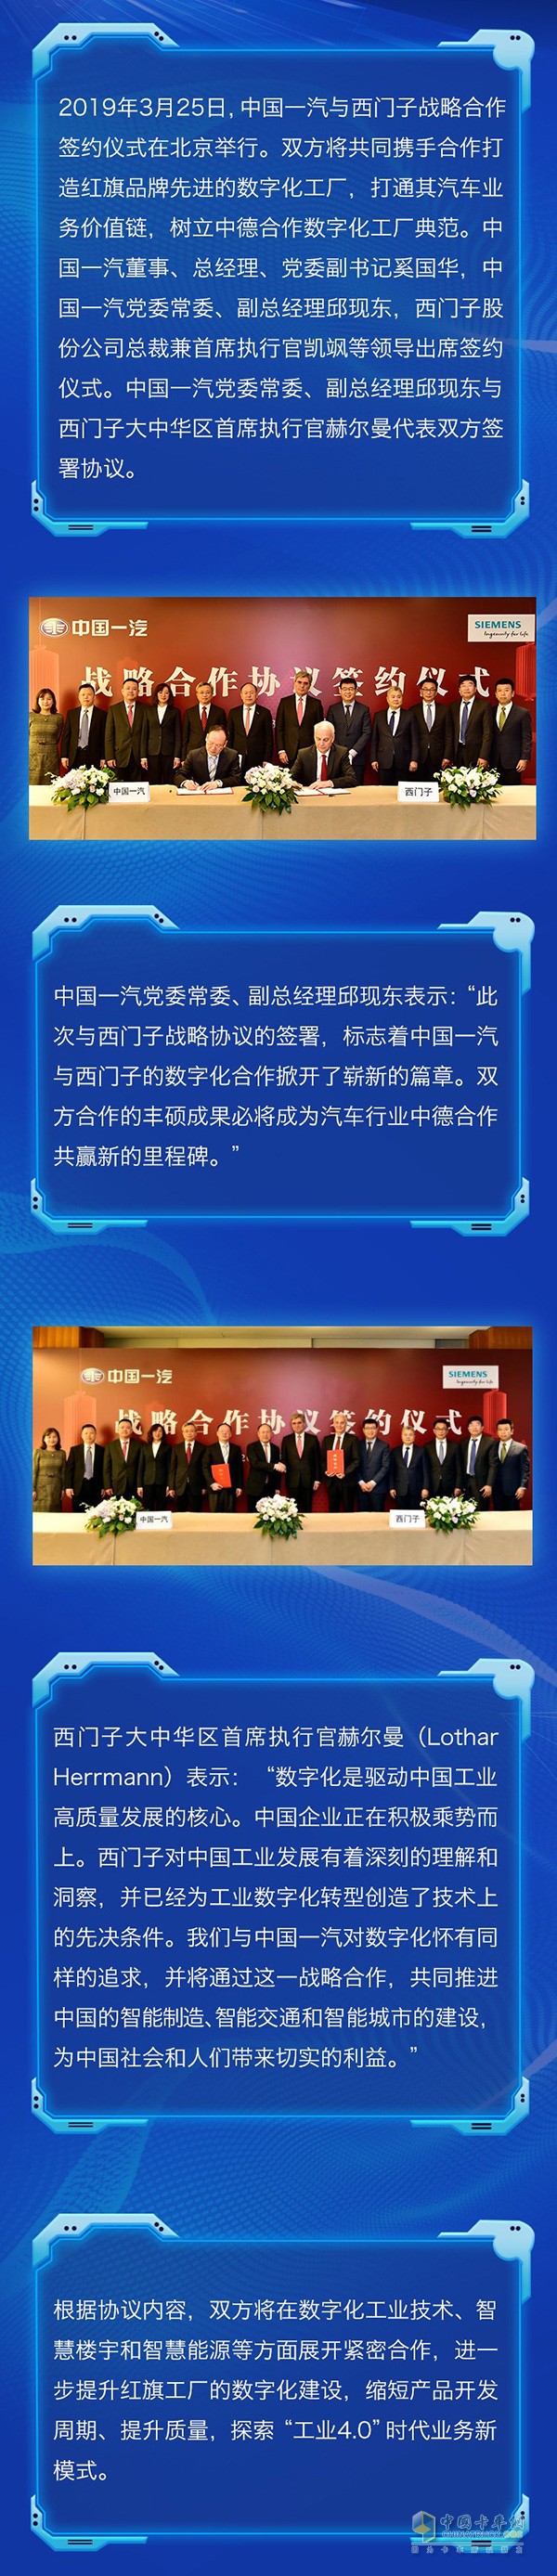 中国一汽与西门子就数字化领域合作签署战略合作协议，共同探索“工业4.0”时代业务新模式。